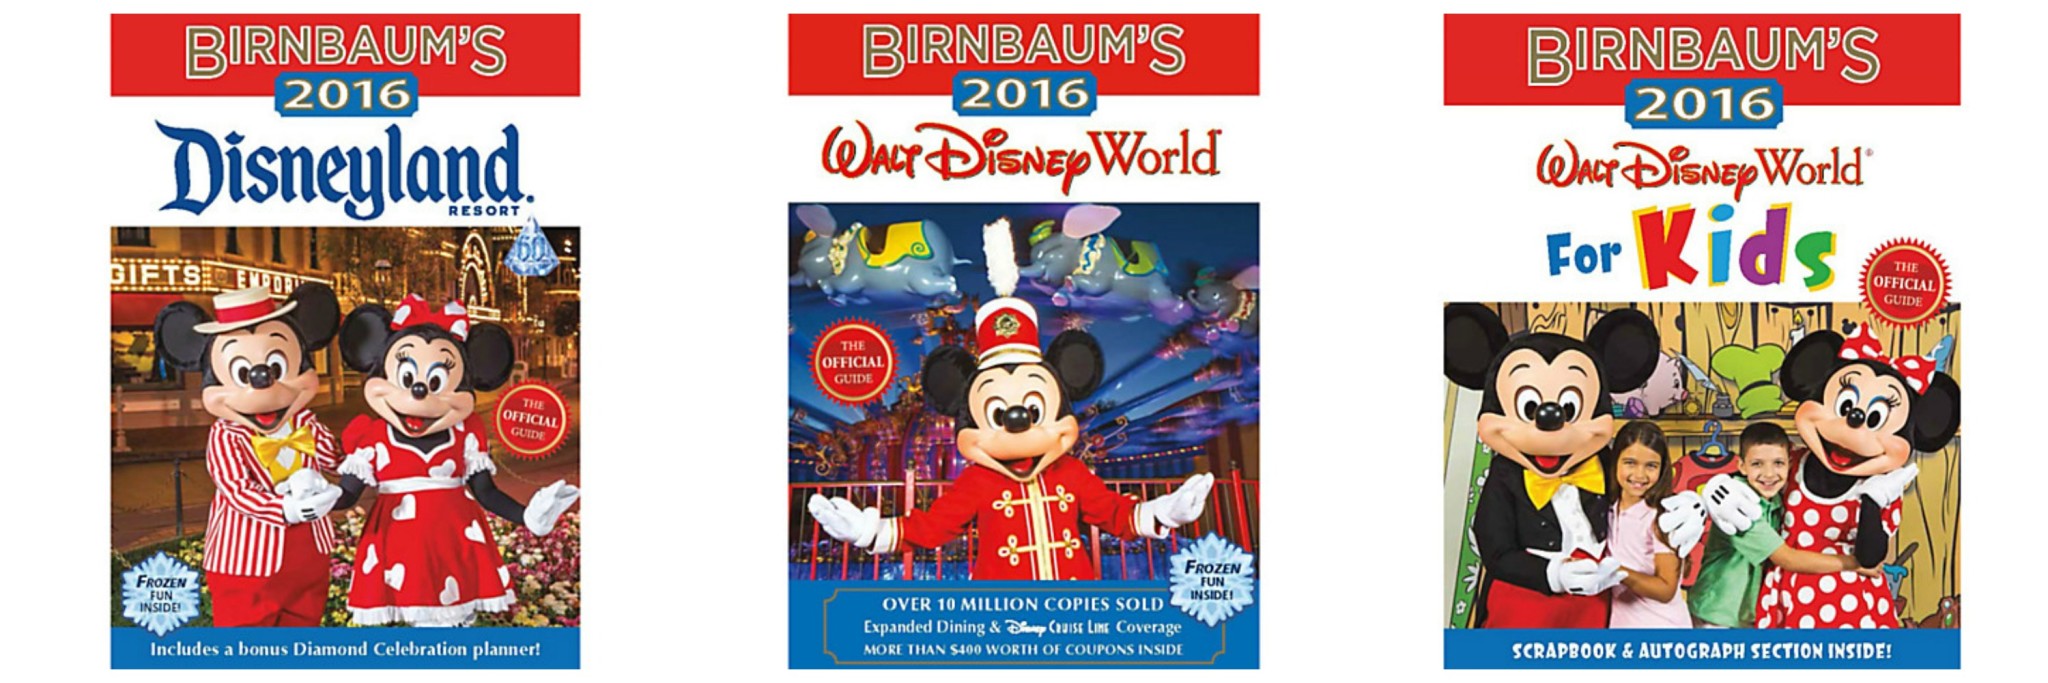 Birnbaum’s Official 2016 Disney Guildebooks Available Now!